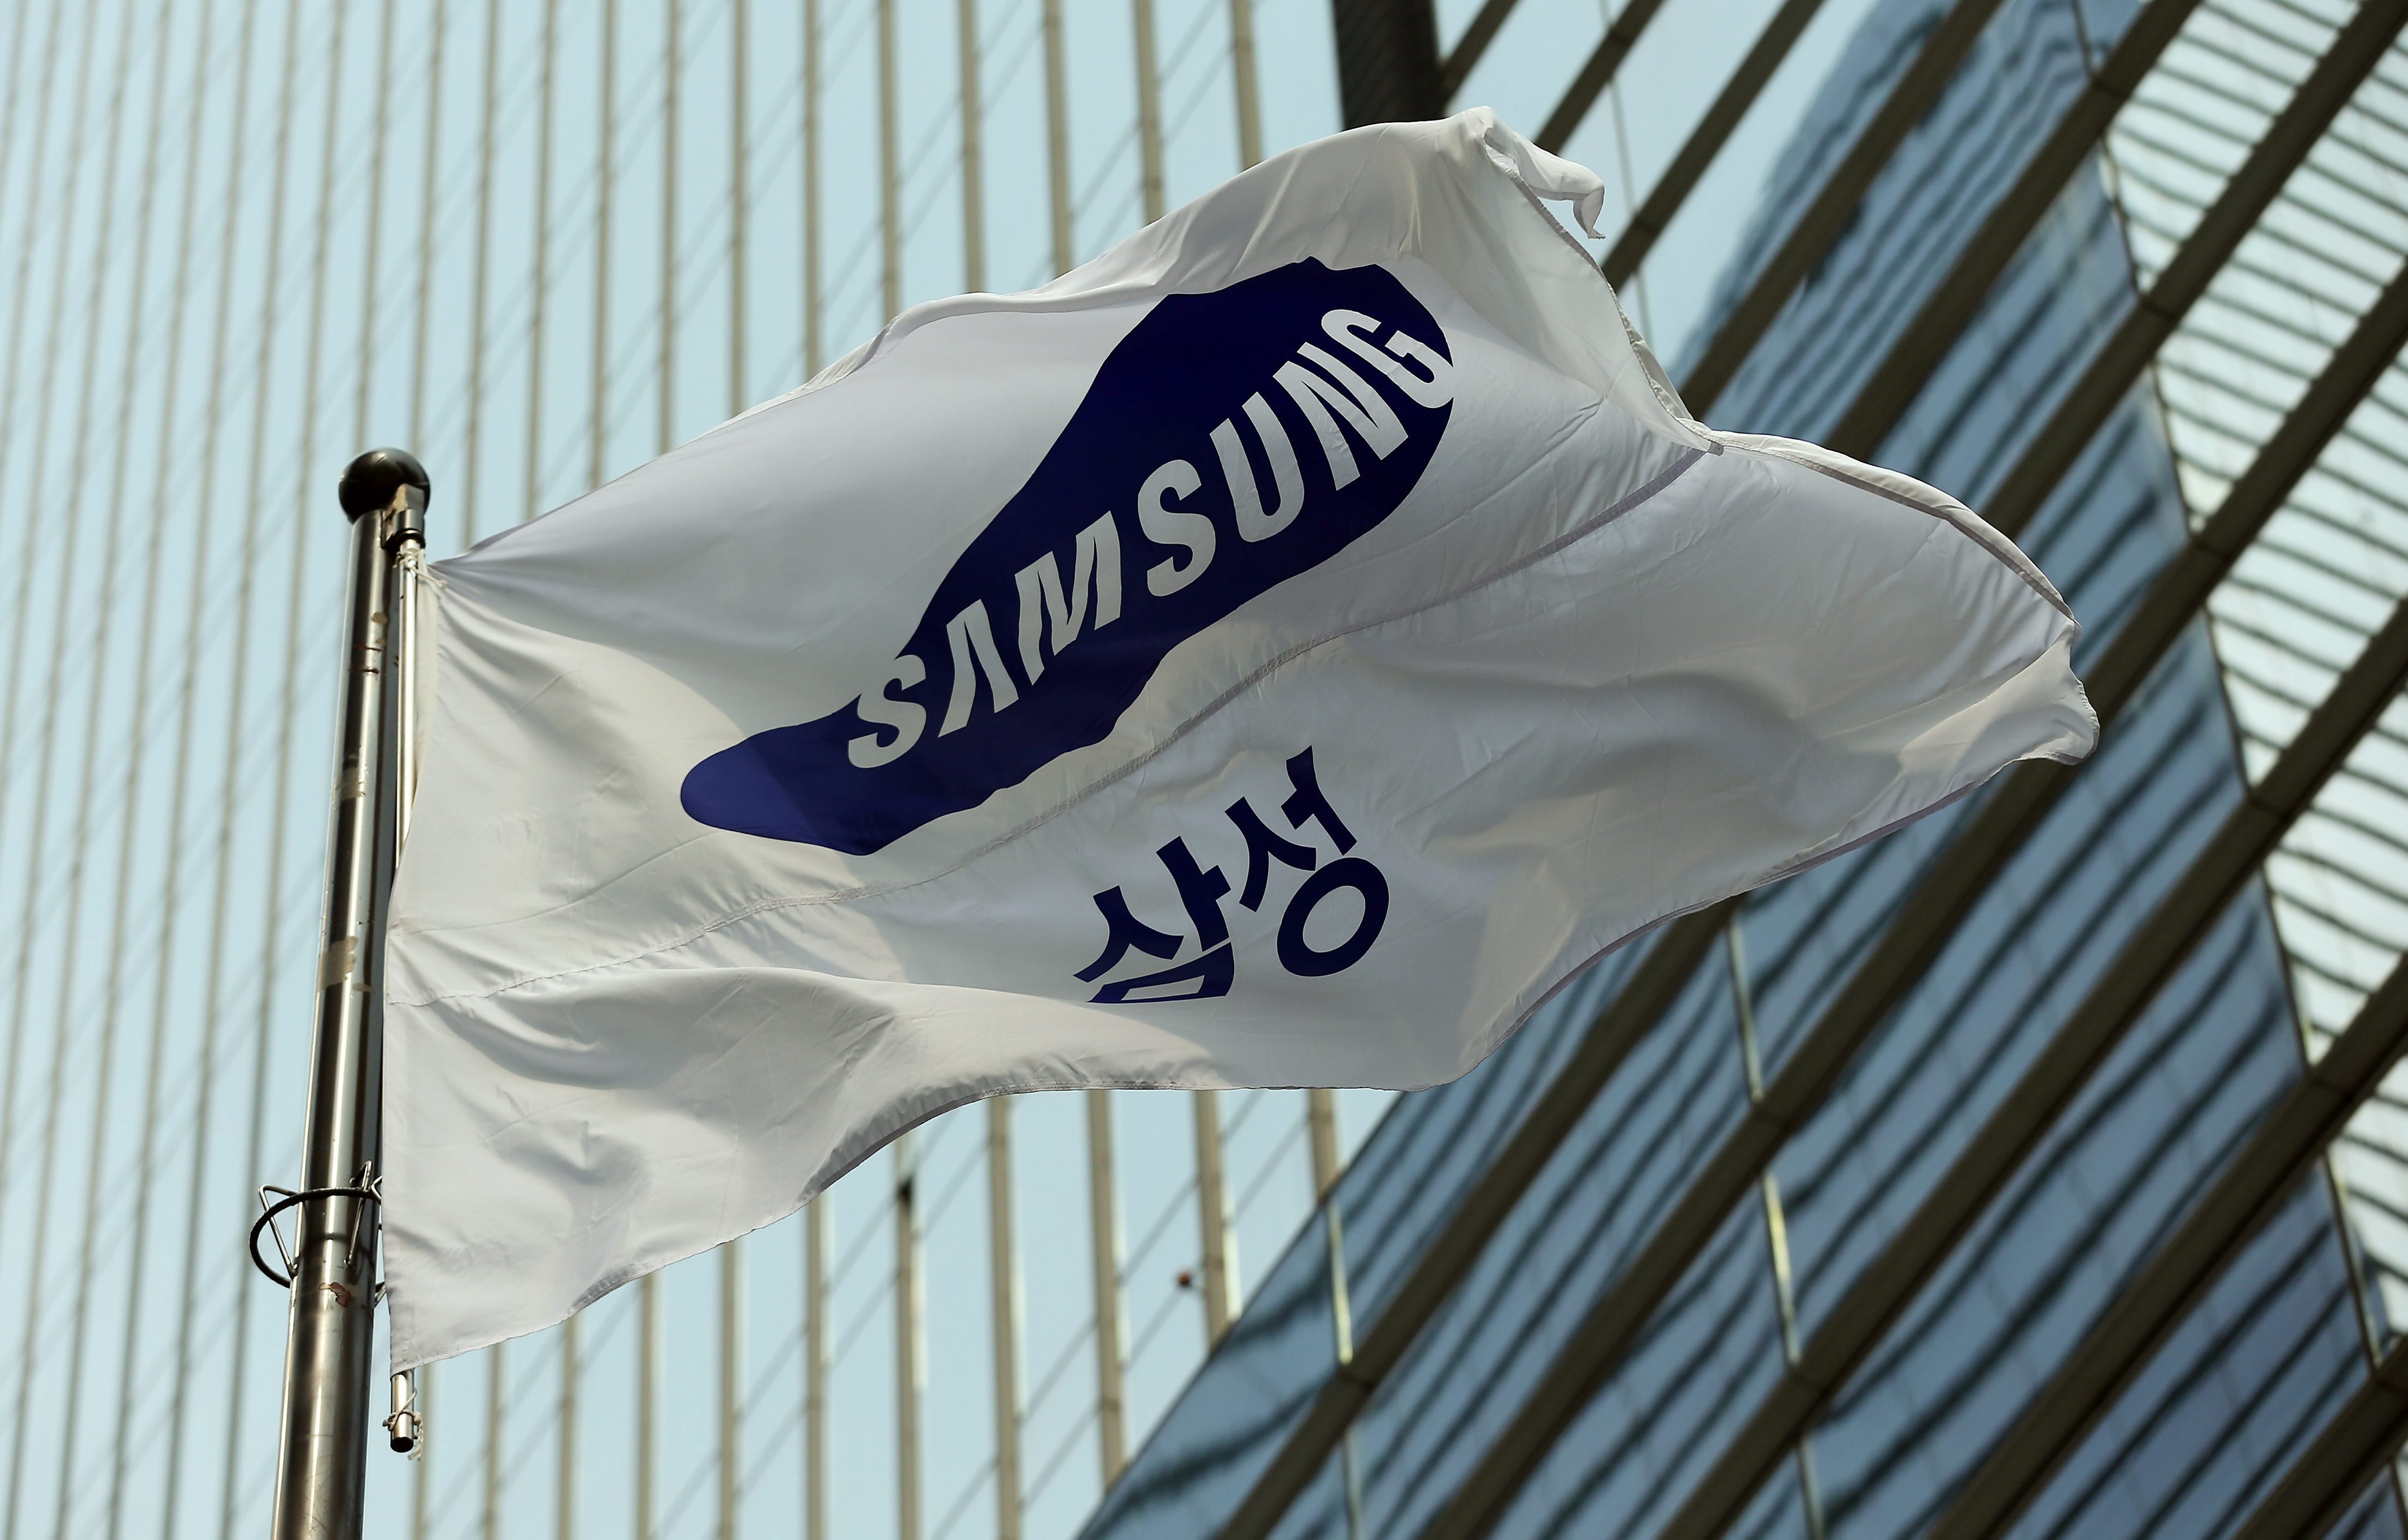 Samsung посочи, че, ако бъде установено използване на детски труд, ще прекрати окончателно бизнес отношенията с партньора си